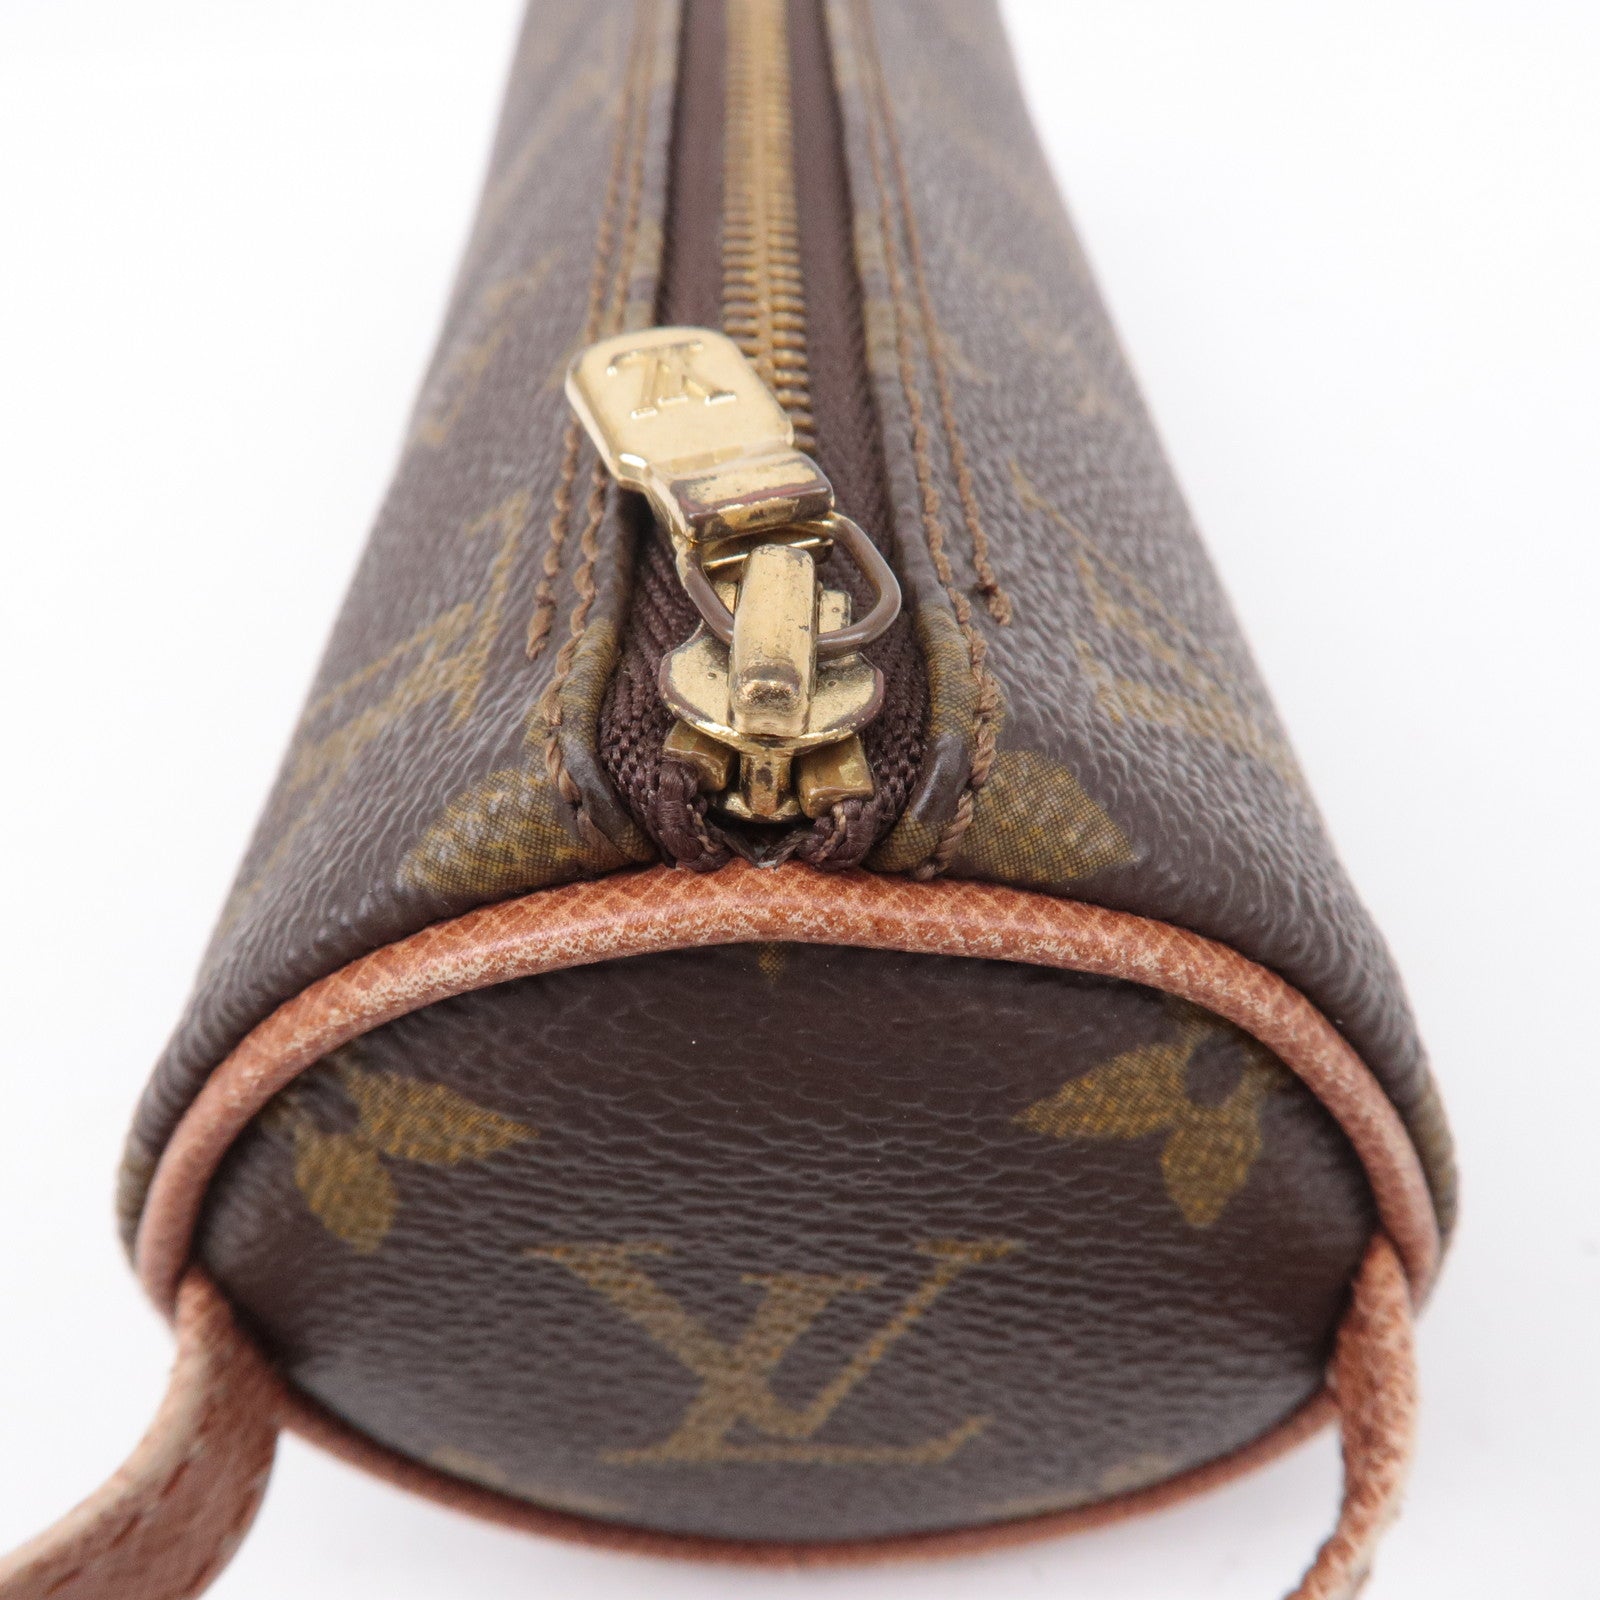 Authentic Louis Vuitton Monogram Trousse Ronde Pen Case Pouch